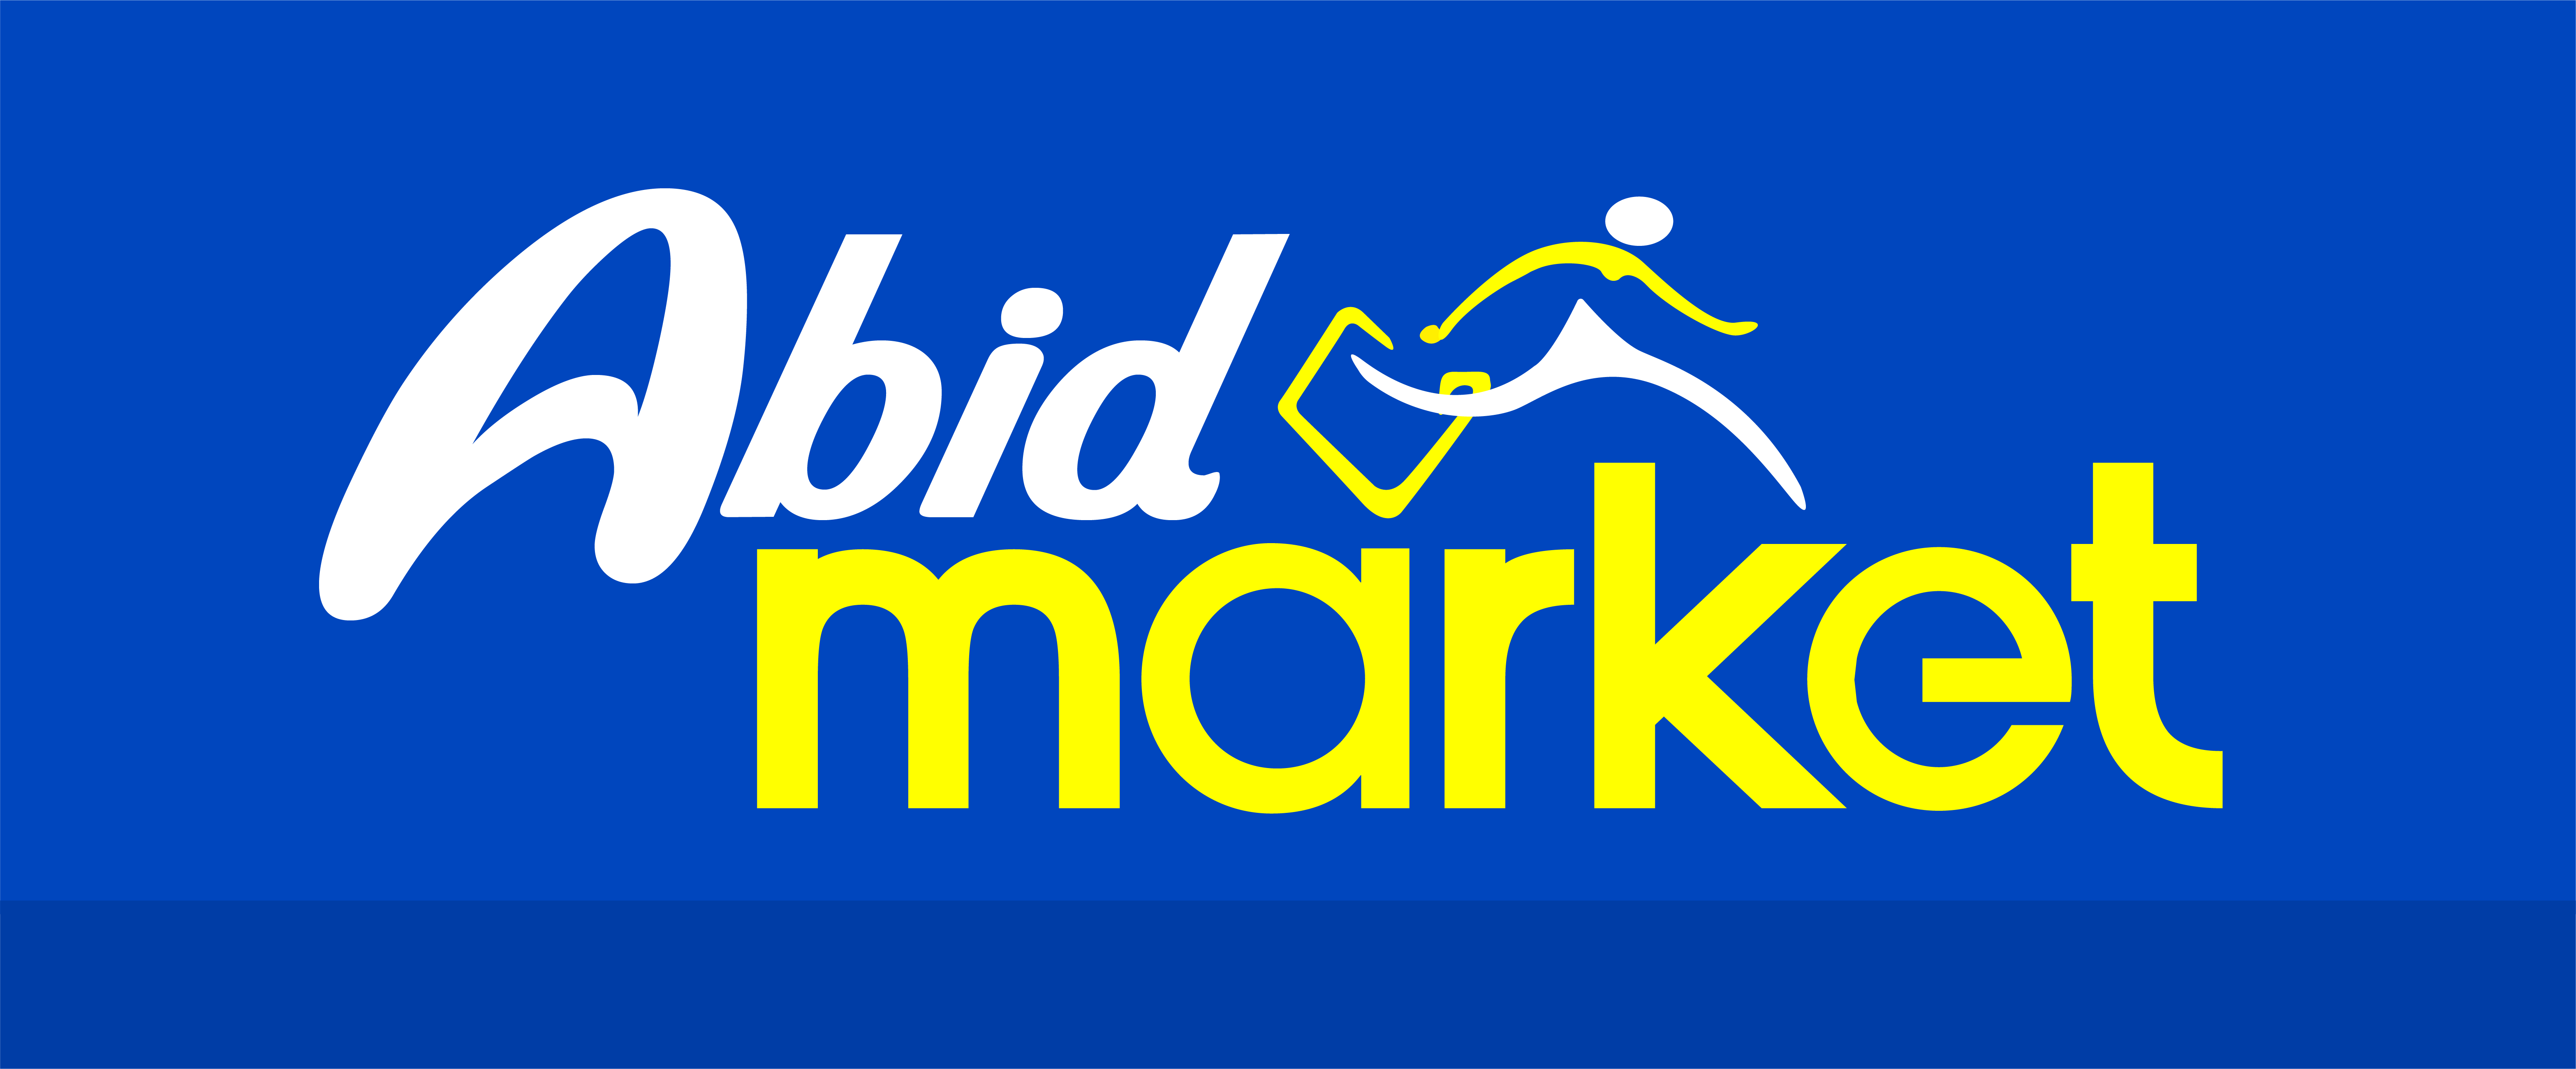 Abid Market-Logo-DL-05-12